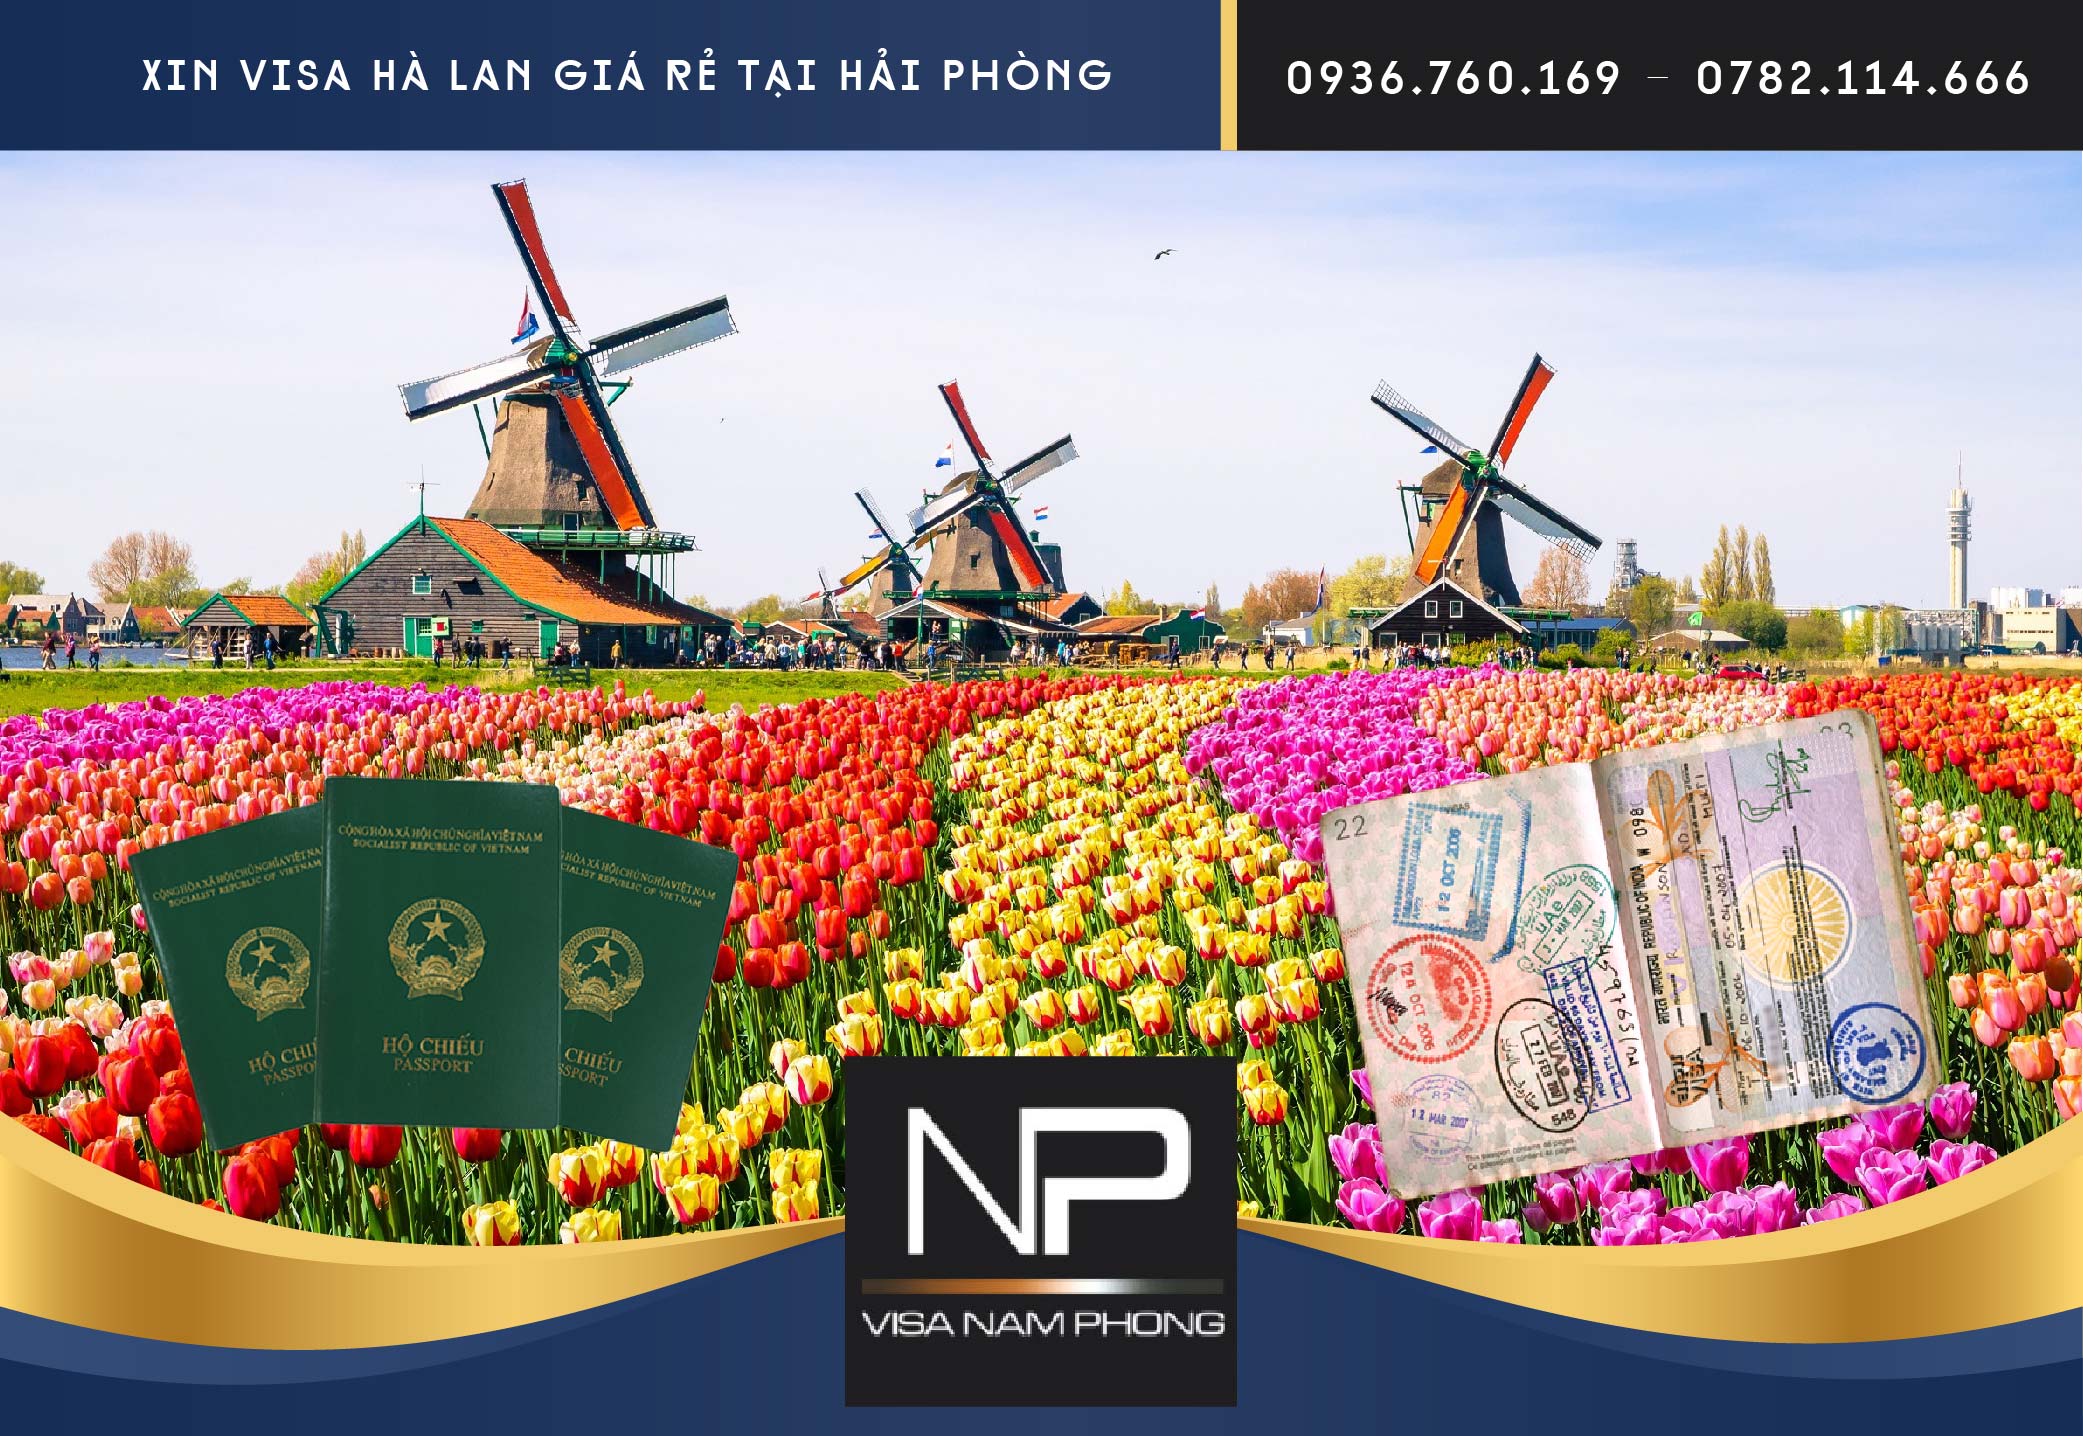 Xin visa Hà Lan giá rẻ tại Hải Phòng